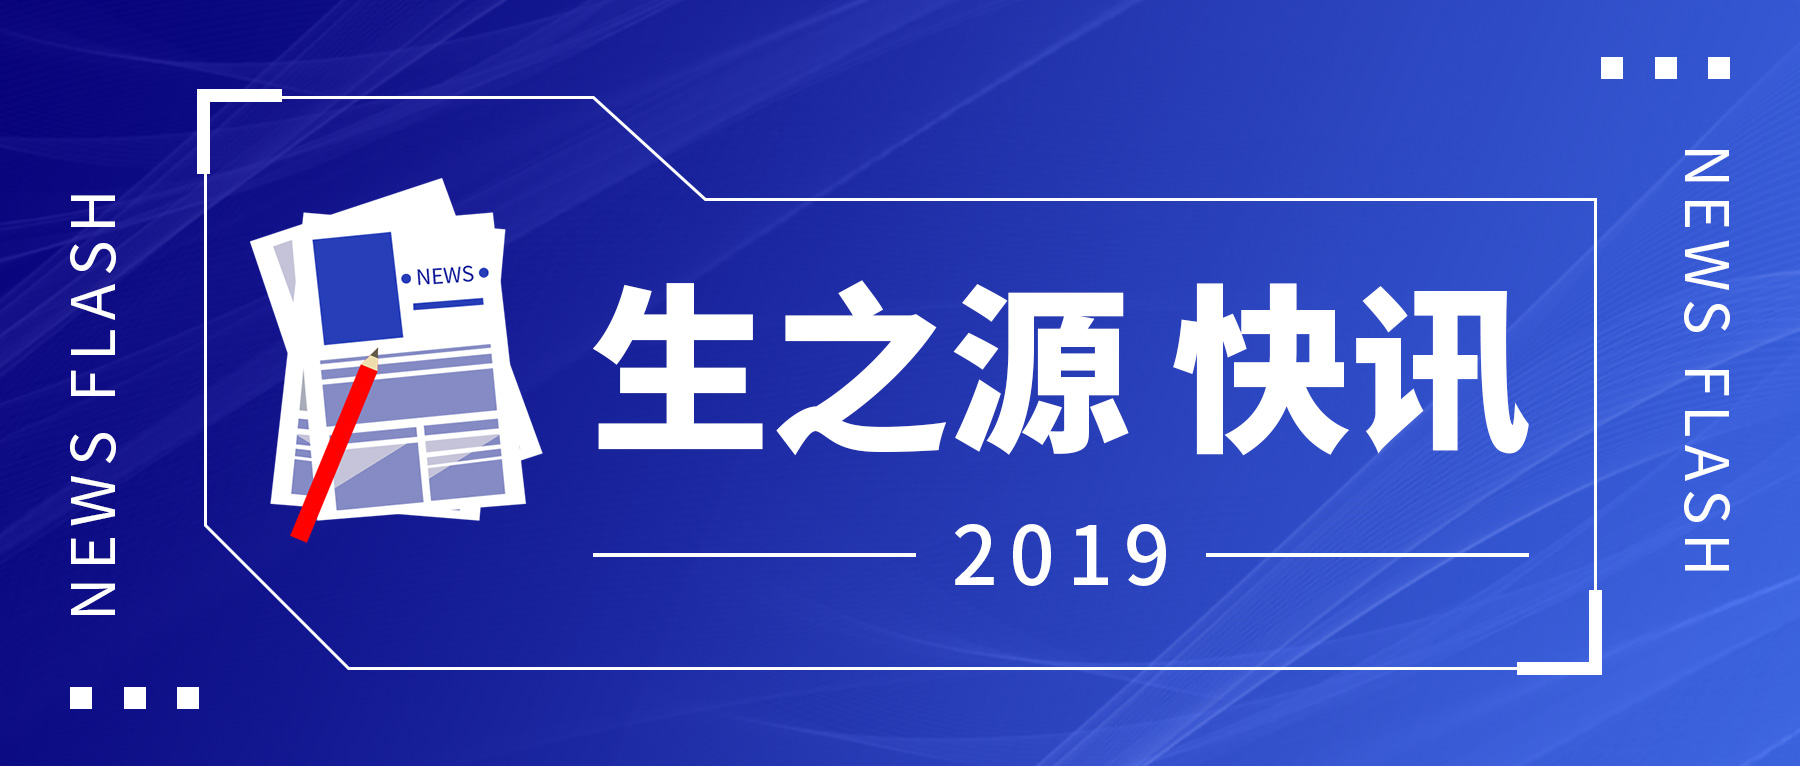 喜訊||我公司AFU成(chéng)功入選2019年度武漢市創新産品